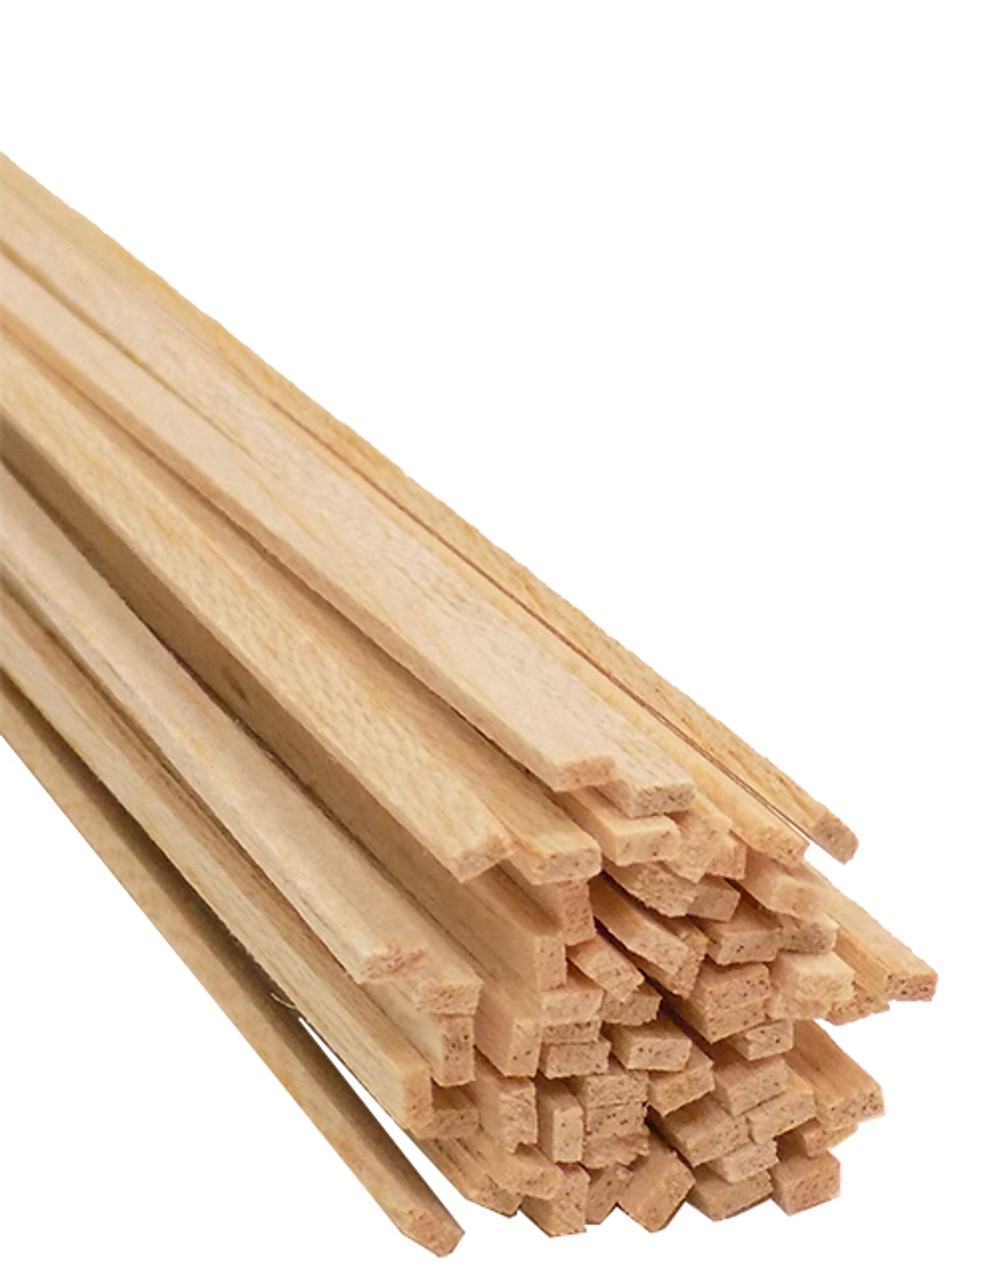 x 1 lumber